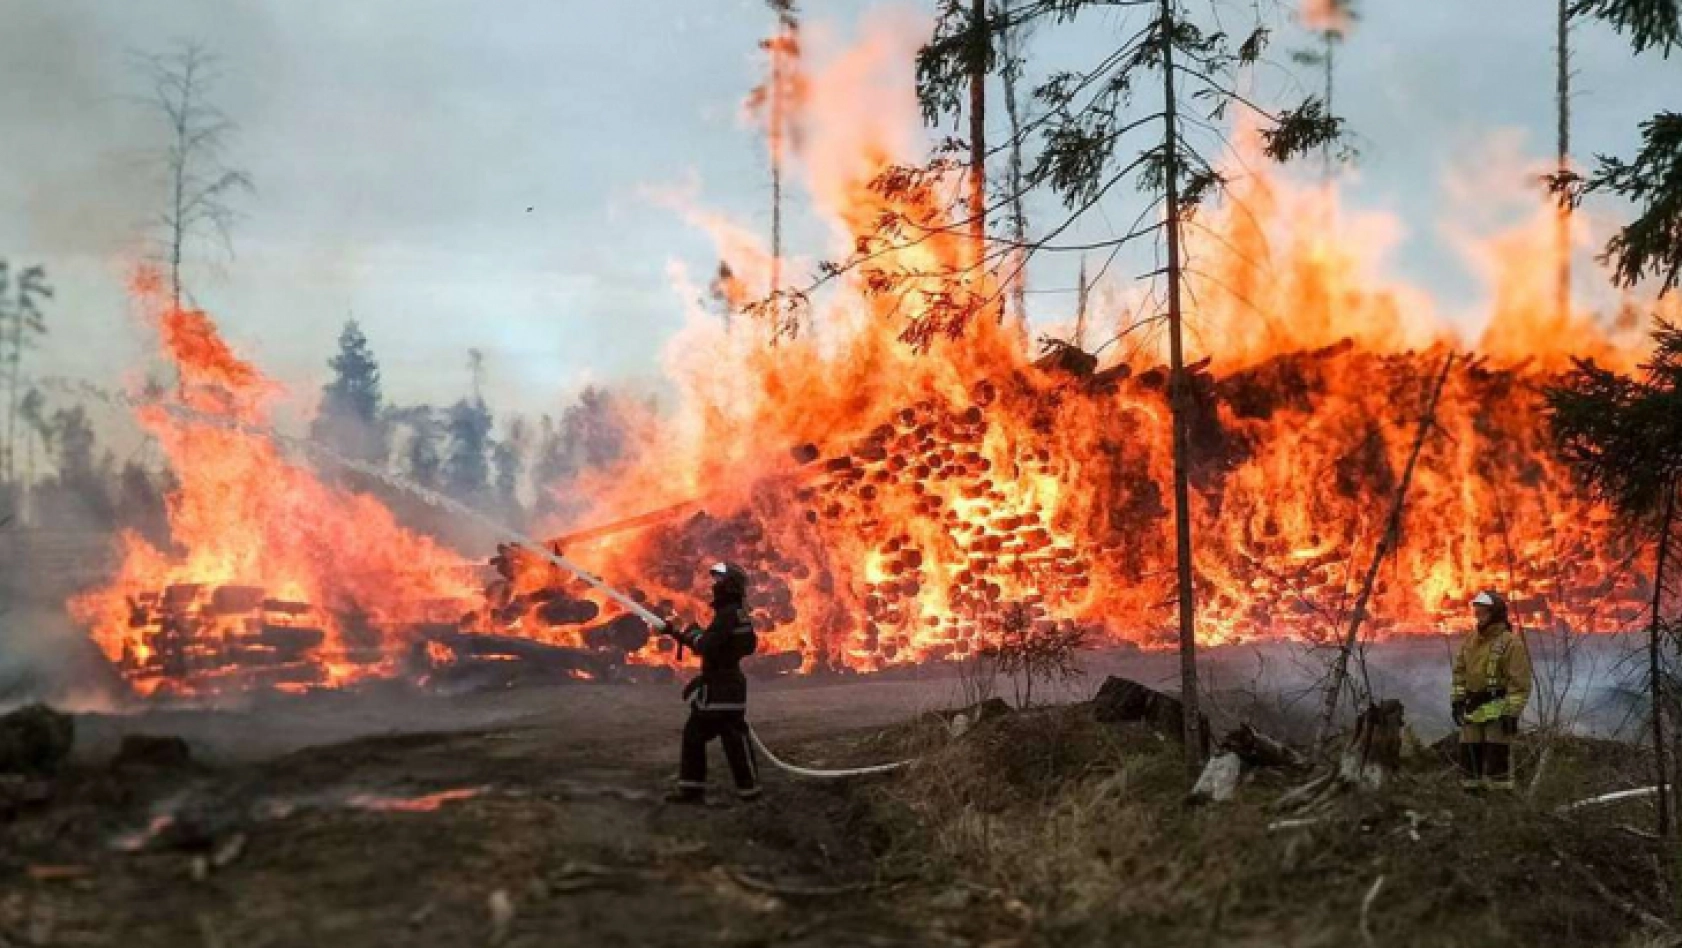 Rusya'da orman yangınları nedeniyle OHAL ilan edildi